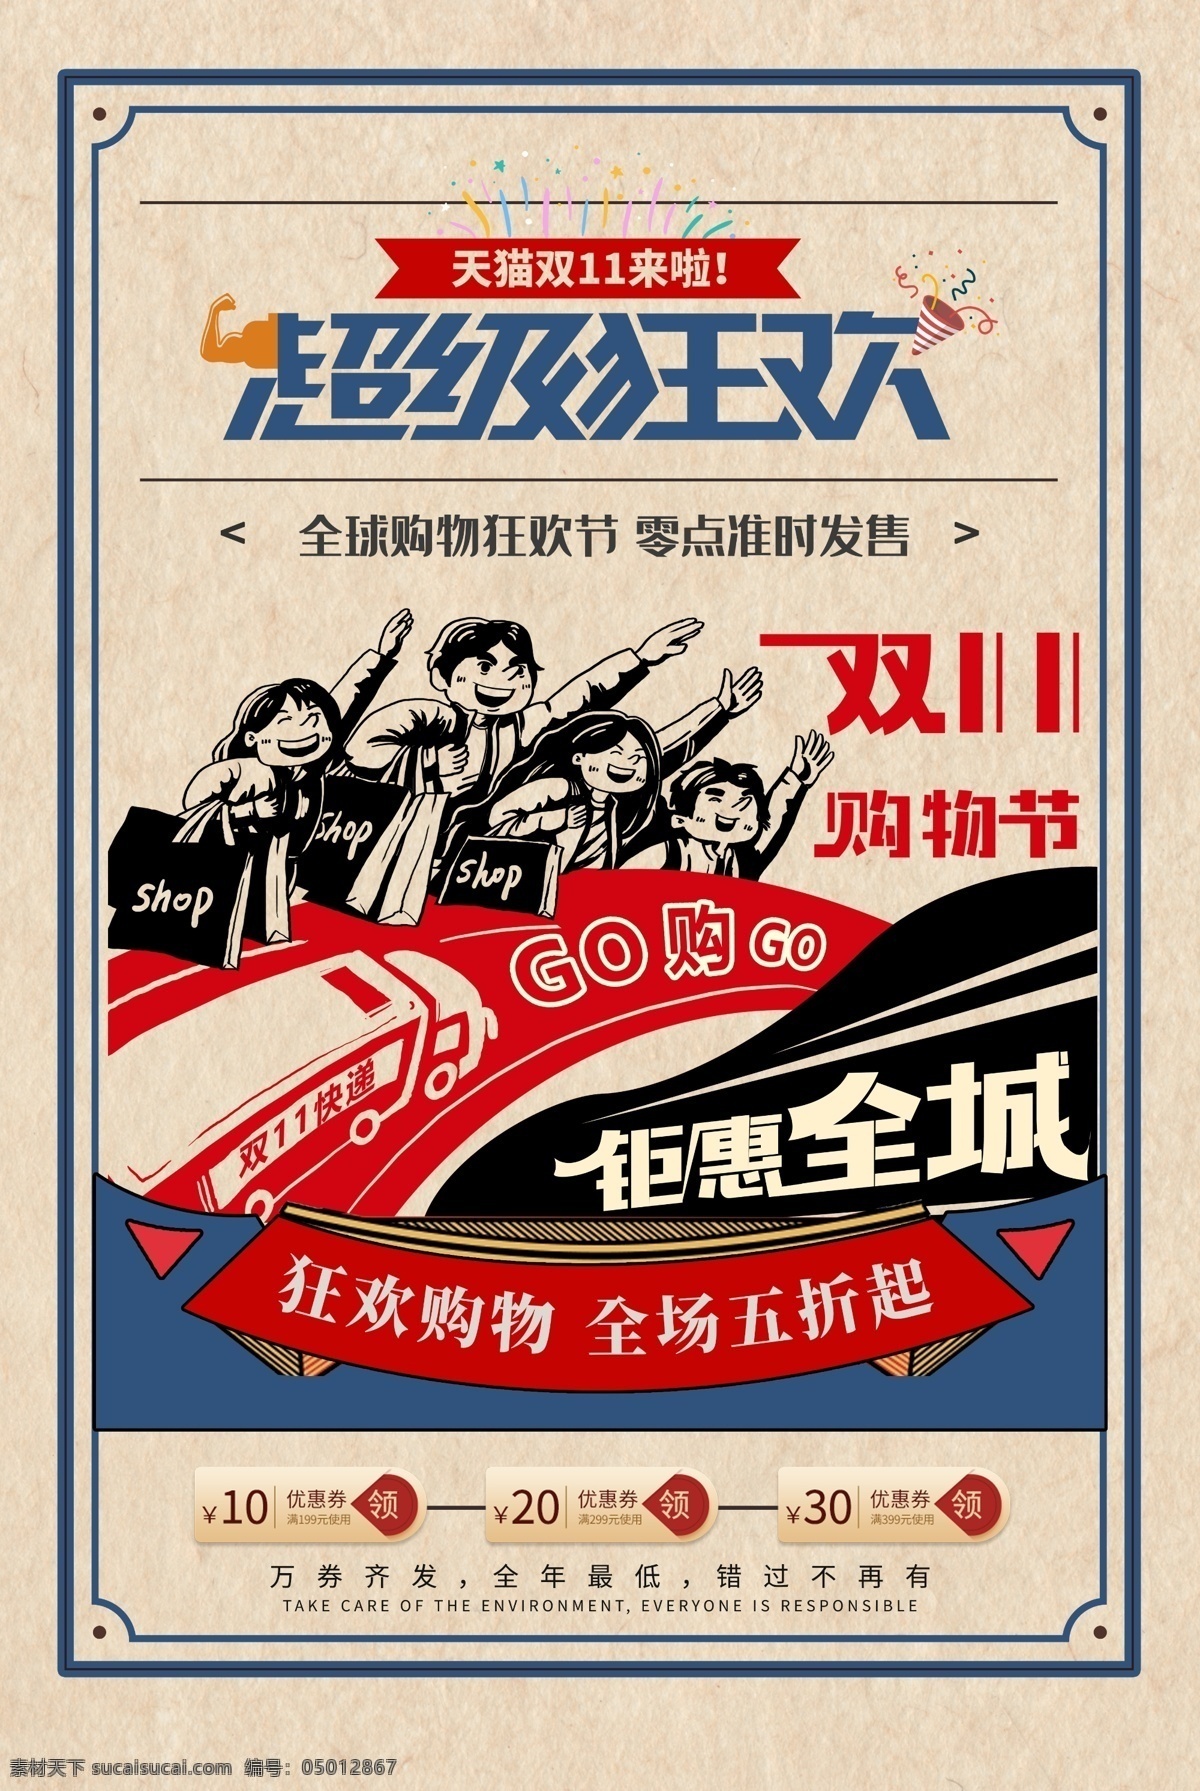 双 节日 狂欢 活动 促销 宣传海报 双11 宣传 海报 传统节日